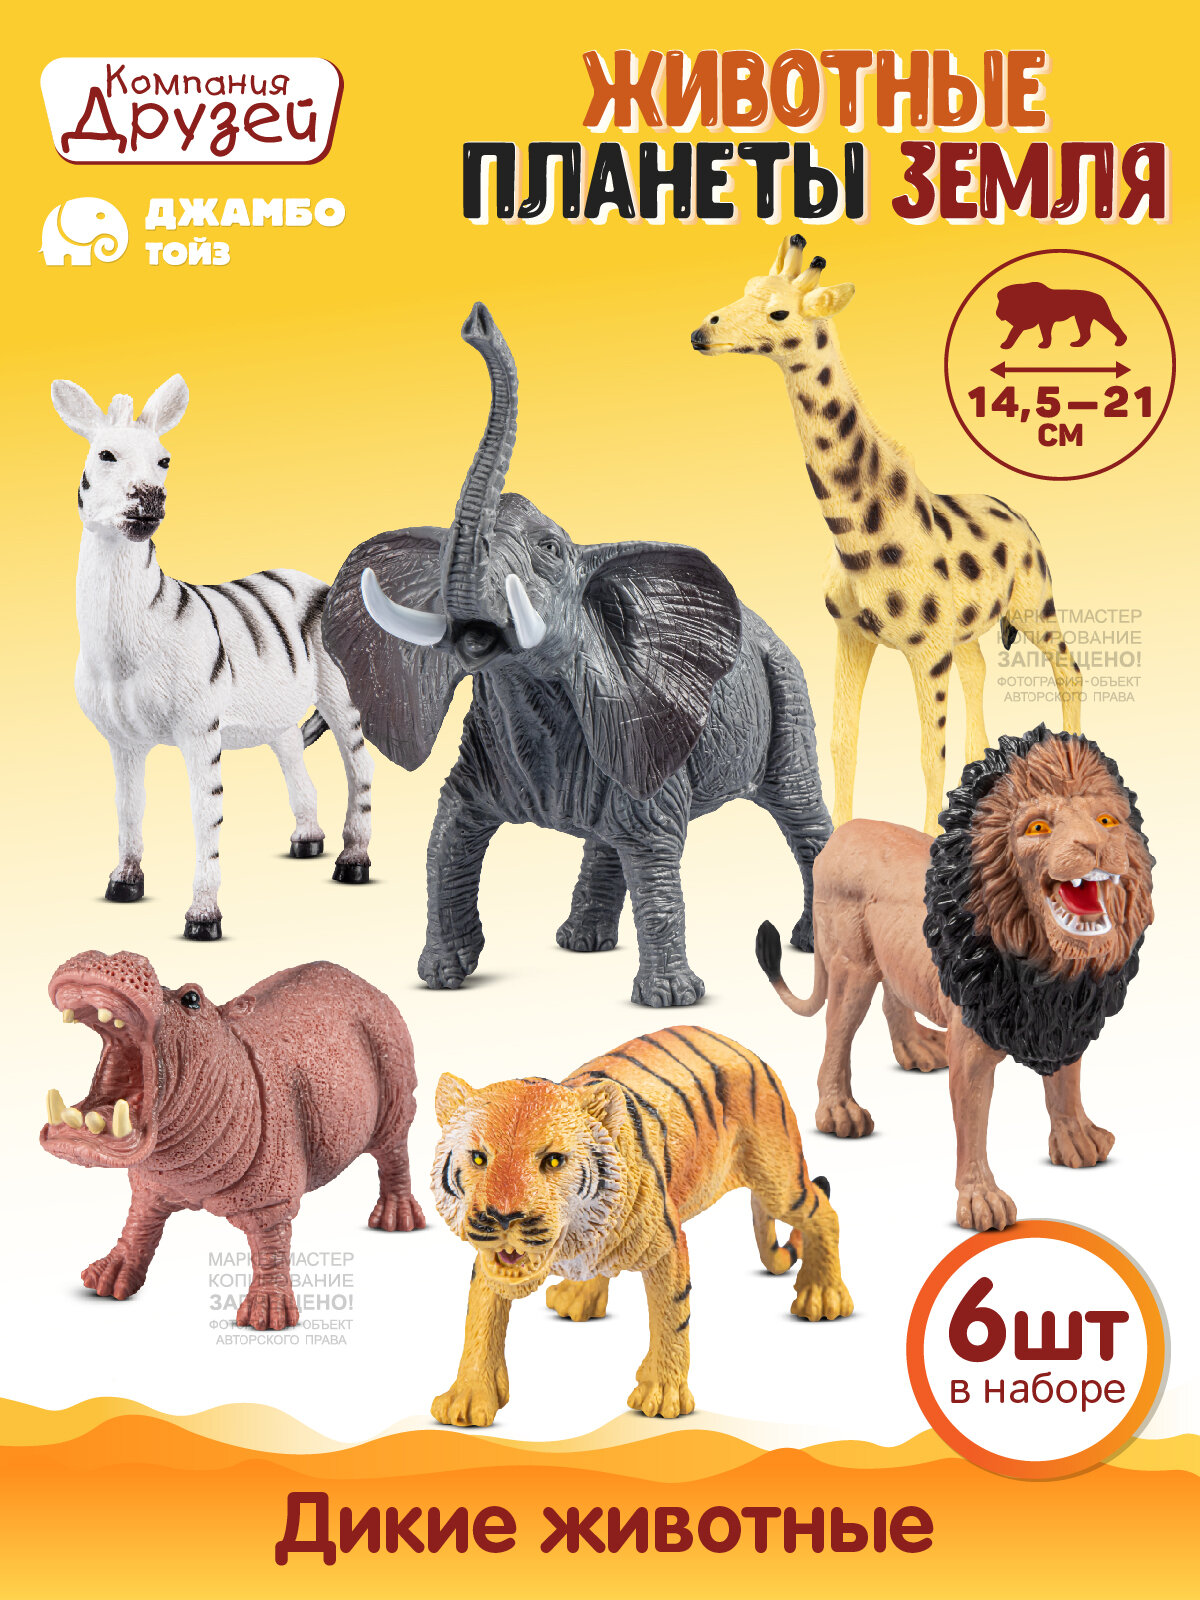 Игровой набор дикие животные ТМ Джамбо Тойз, серия "Животные планеты Земля", 6шт, JB0211743